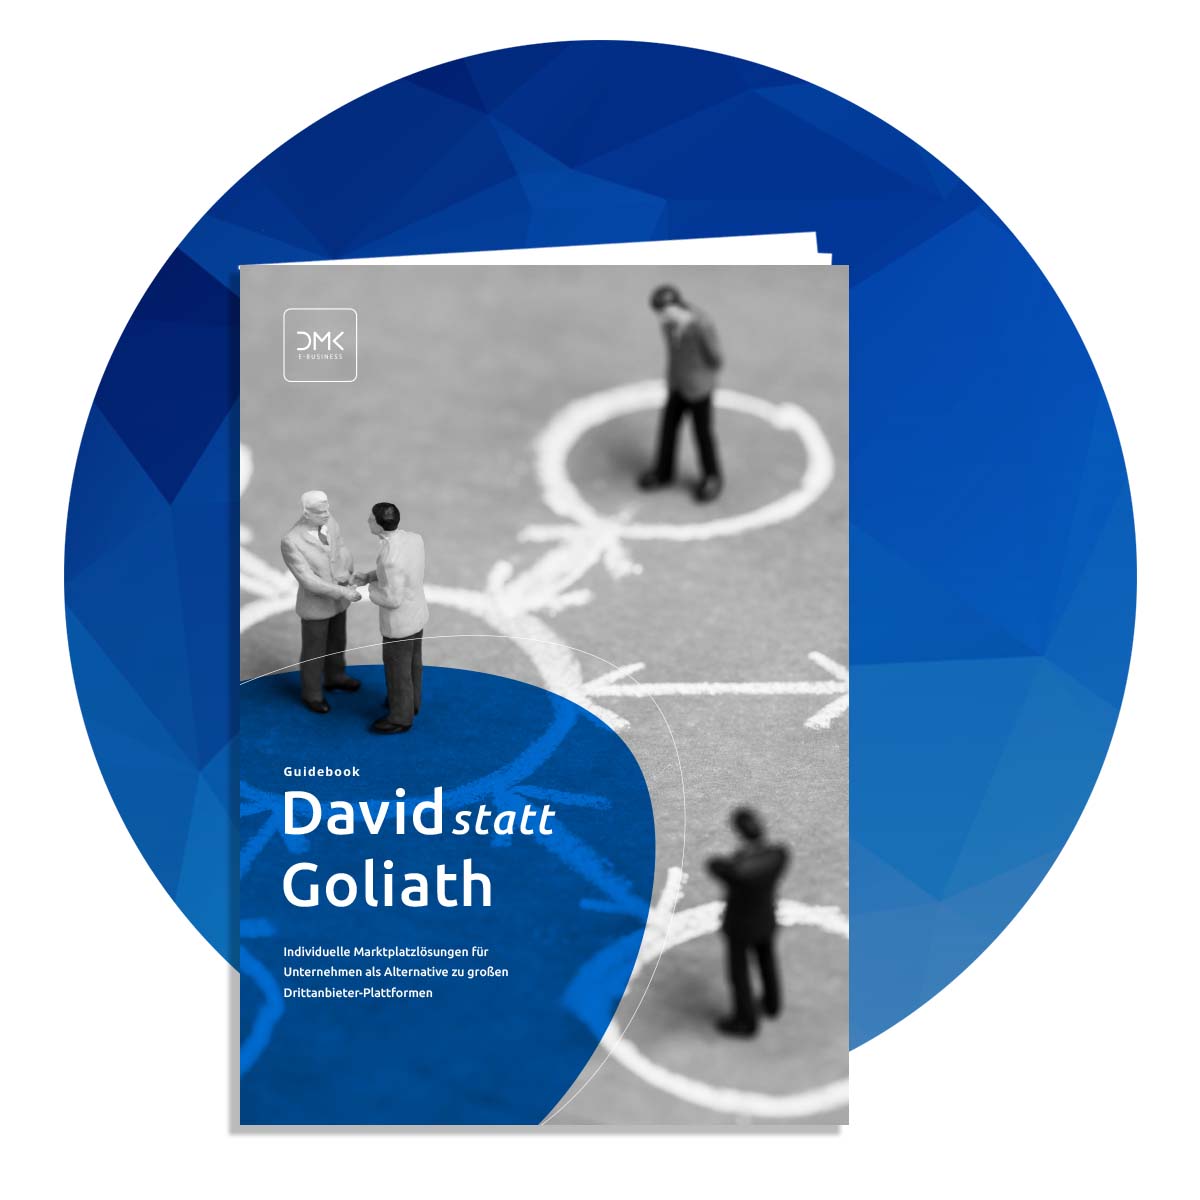 Guidebook "David statt Goliath" vor blauem Hintergrund